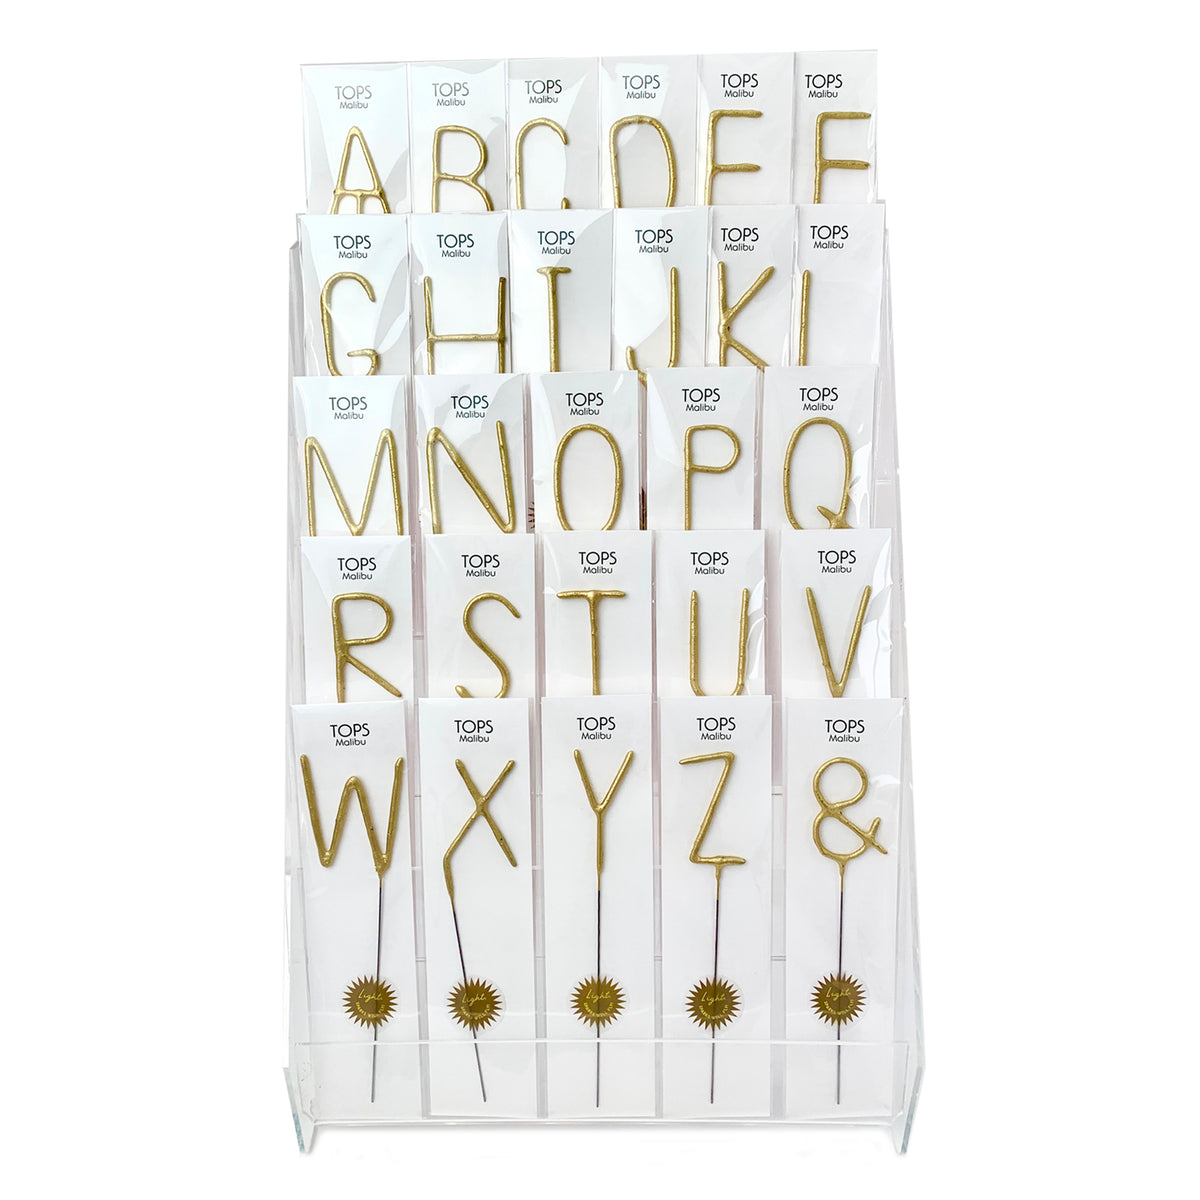 Big Golden Sparkler Wand Letters